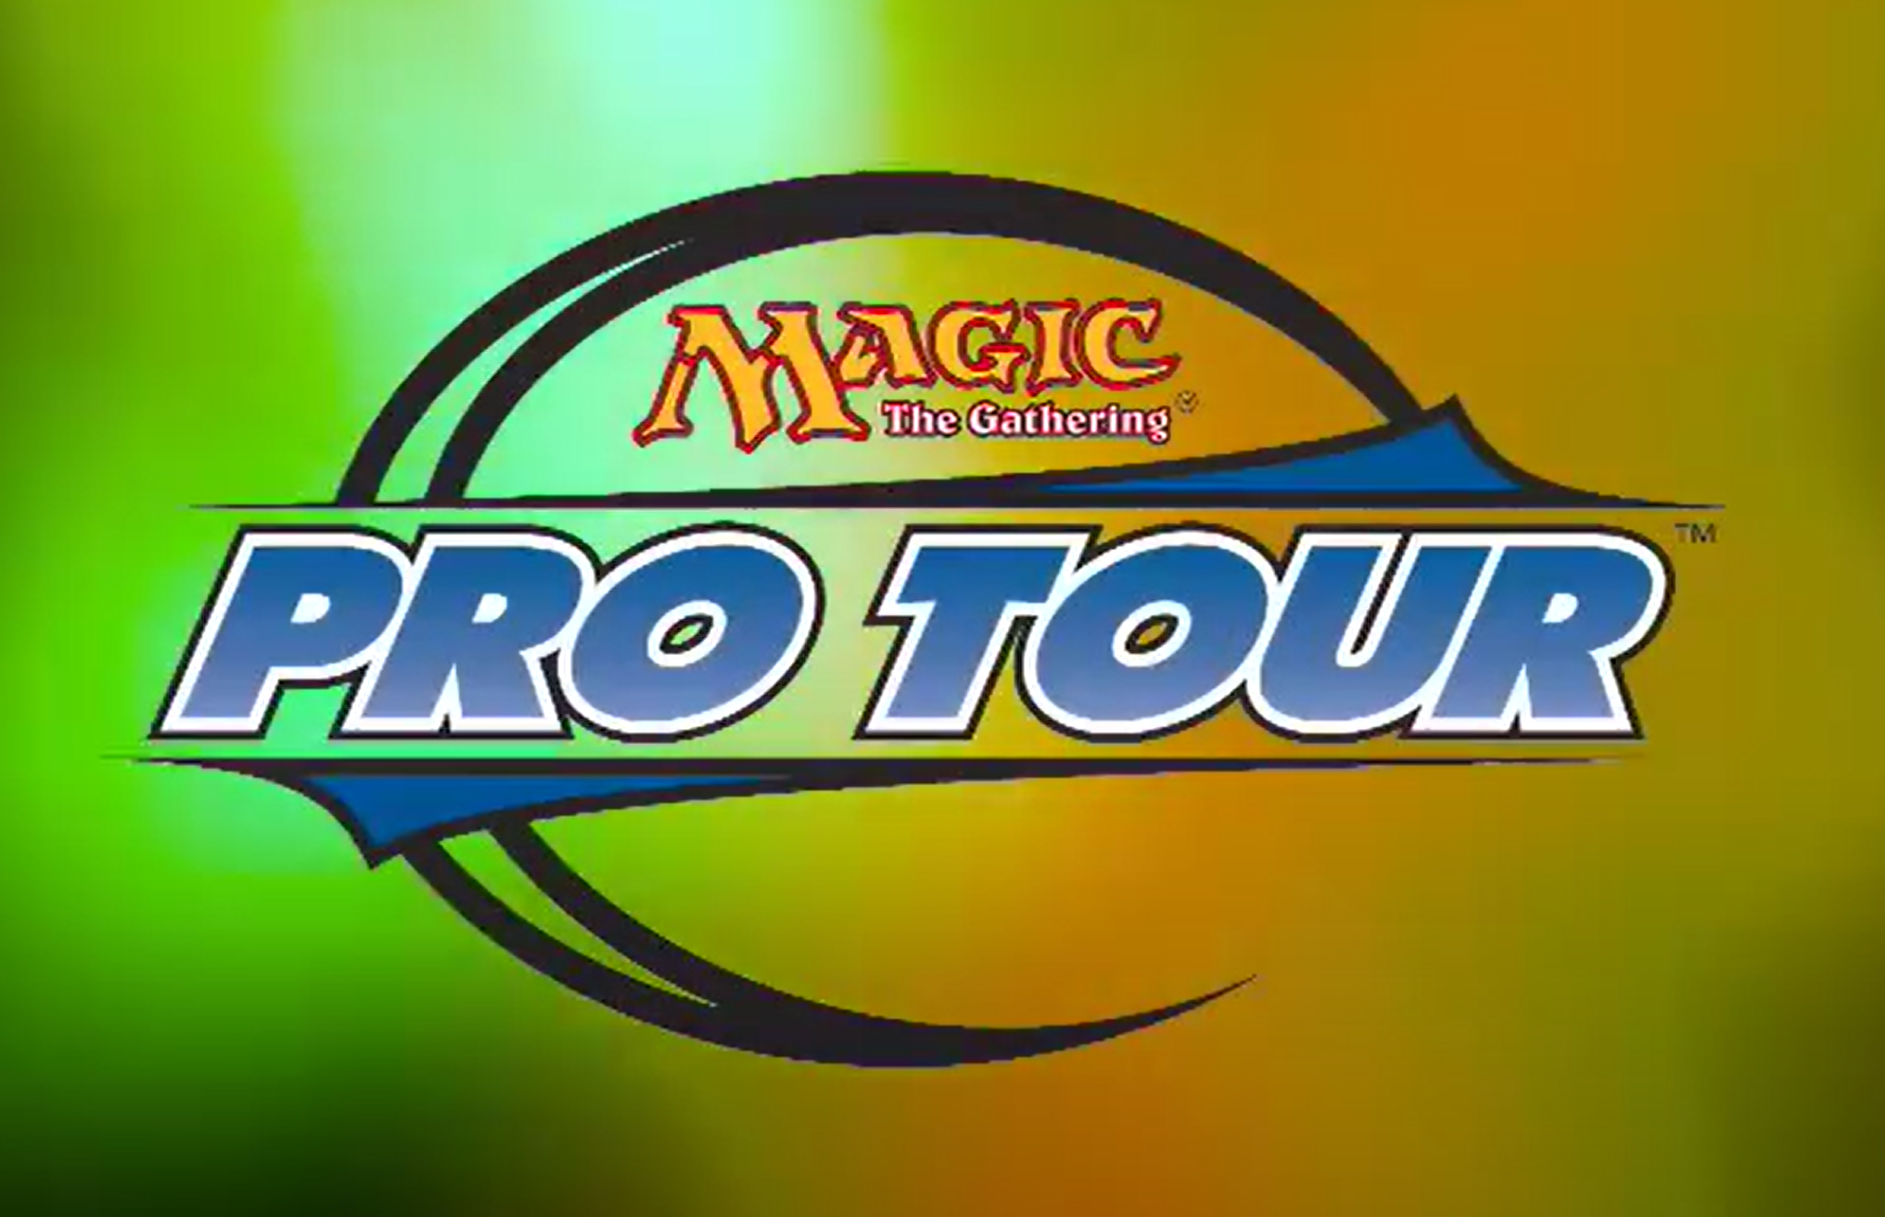 Old Pro tour logo